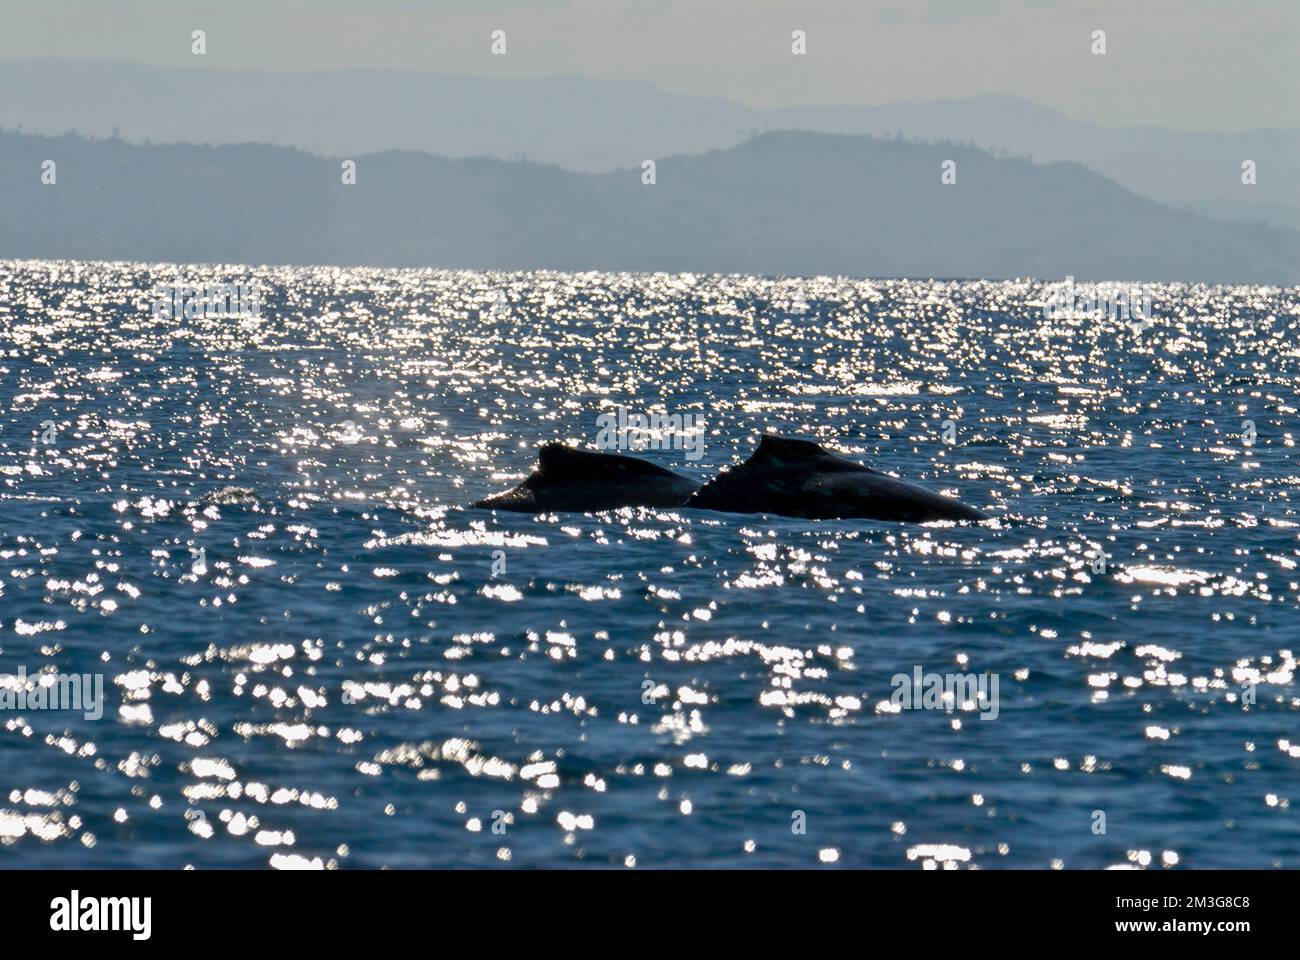 Humpback whale (Megaptera novaeangliae), Ile Sainte Marie, Madagascar, Indian Ocean Stock Photo